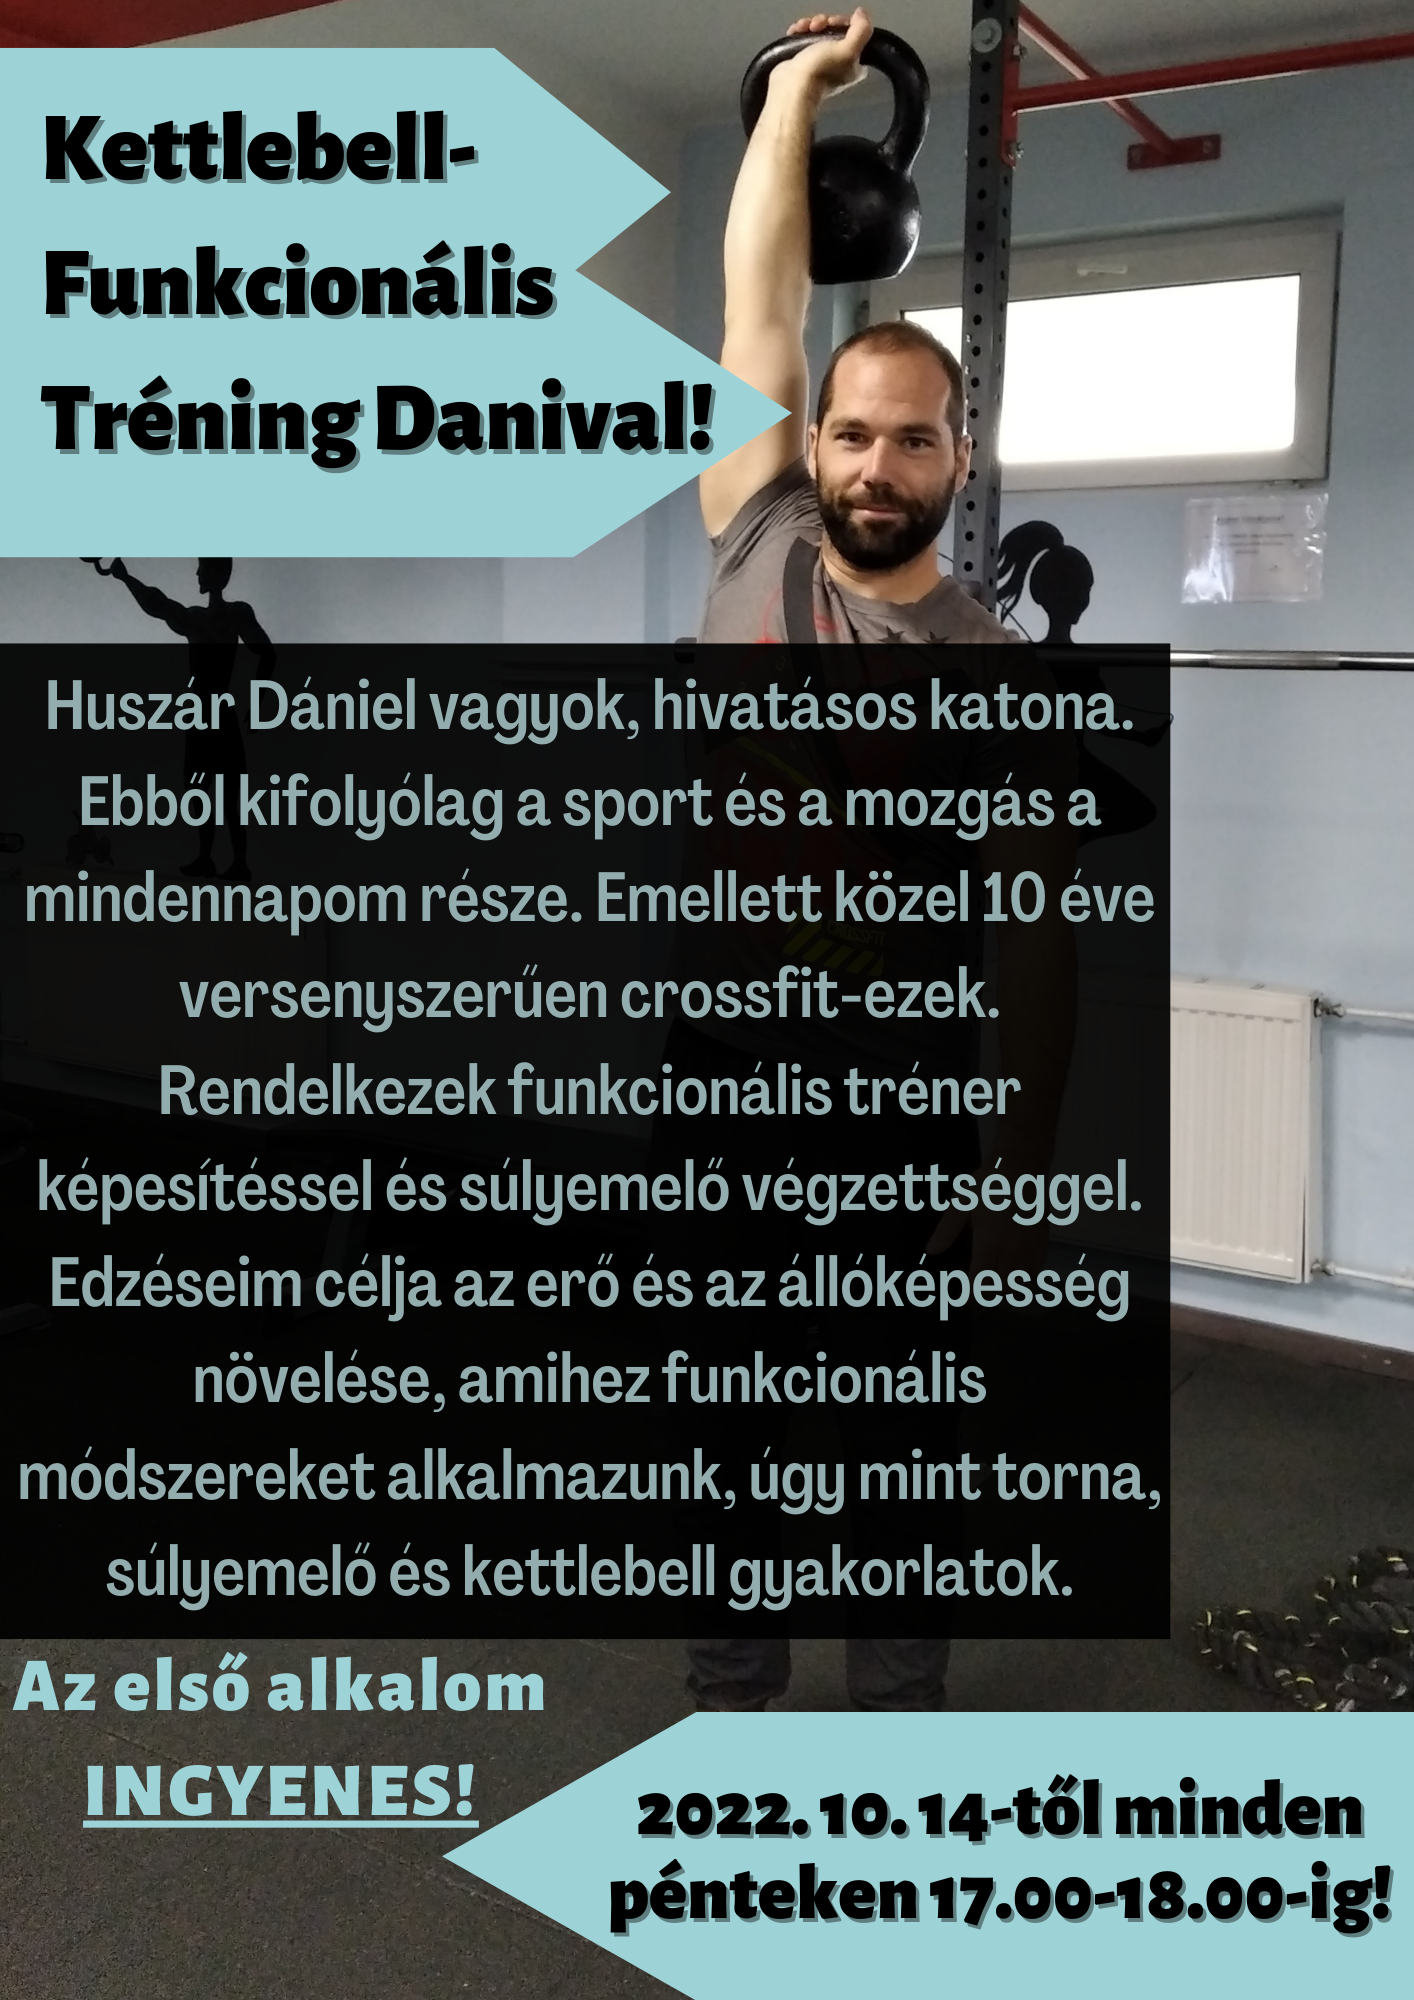 Kettlebell-Funkcionális Tréning Danival